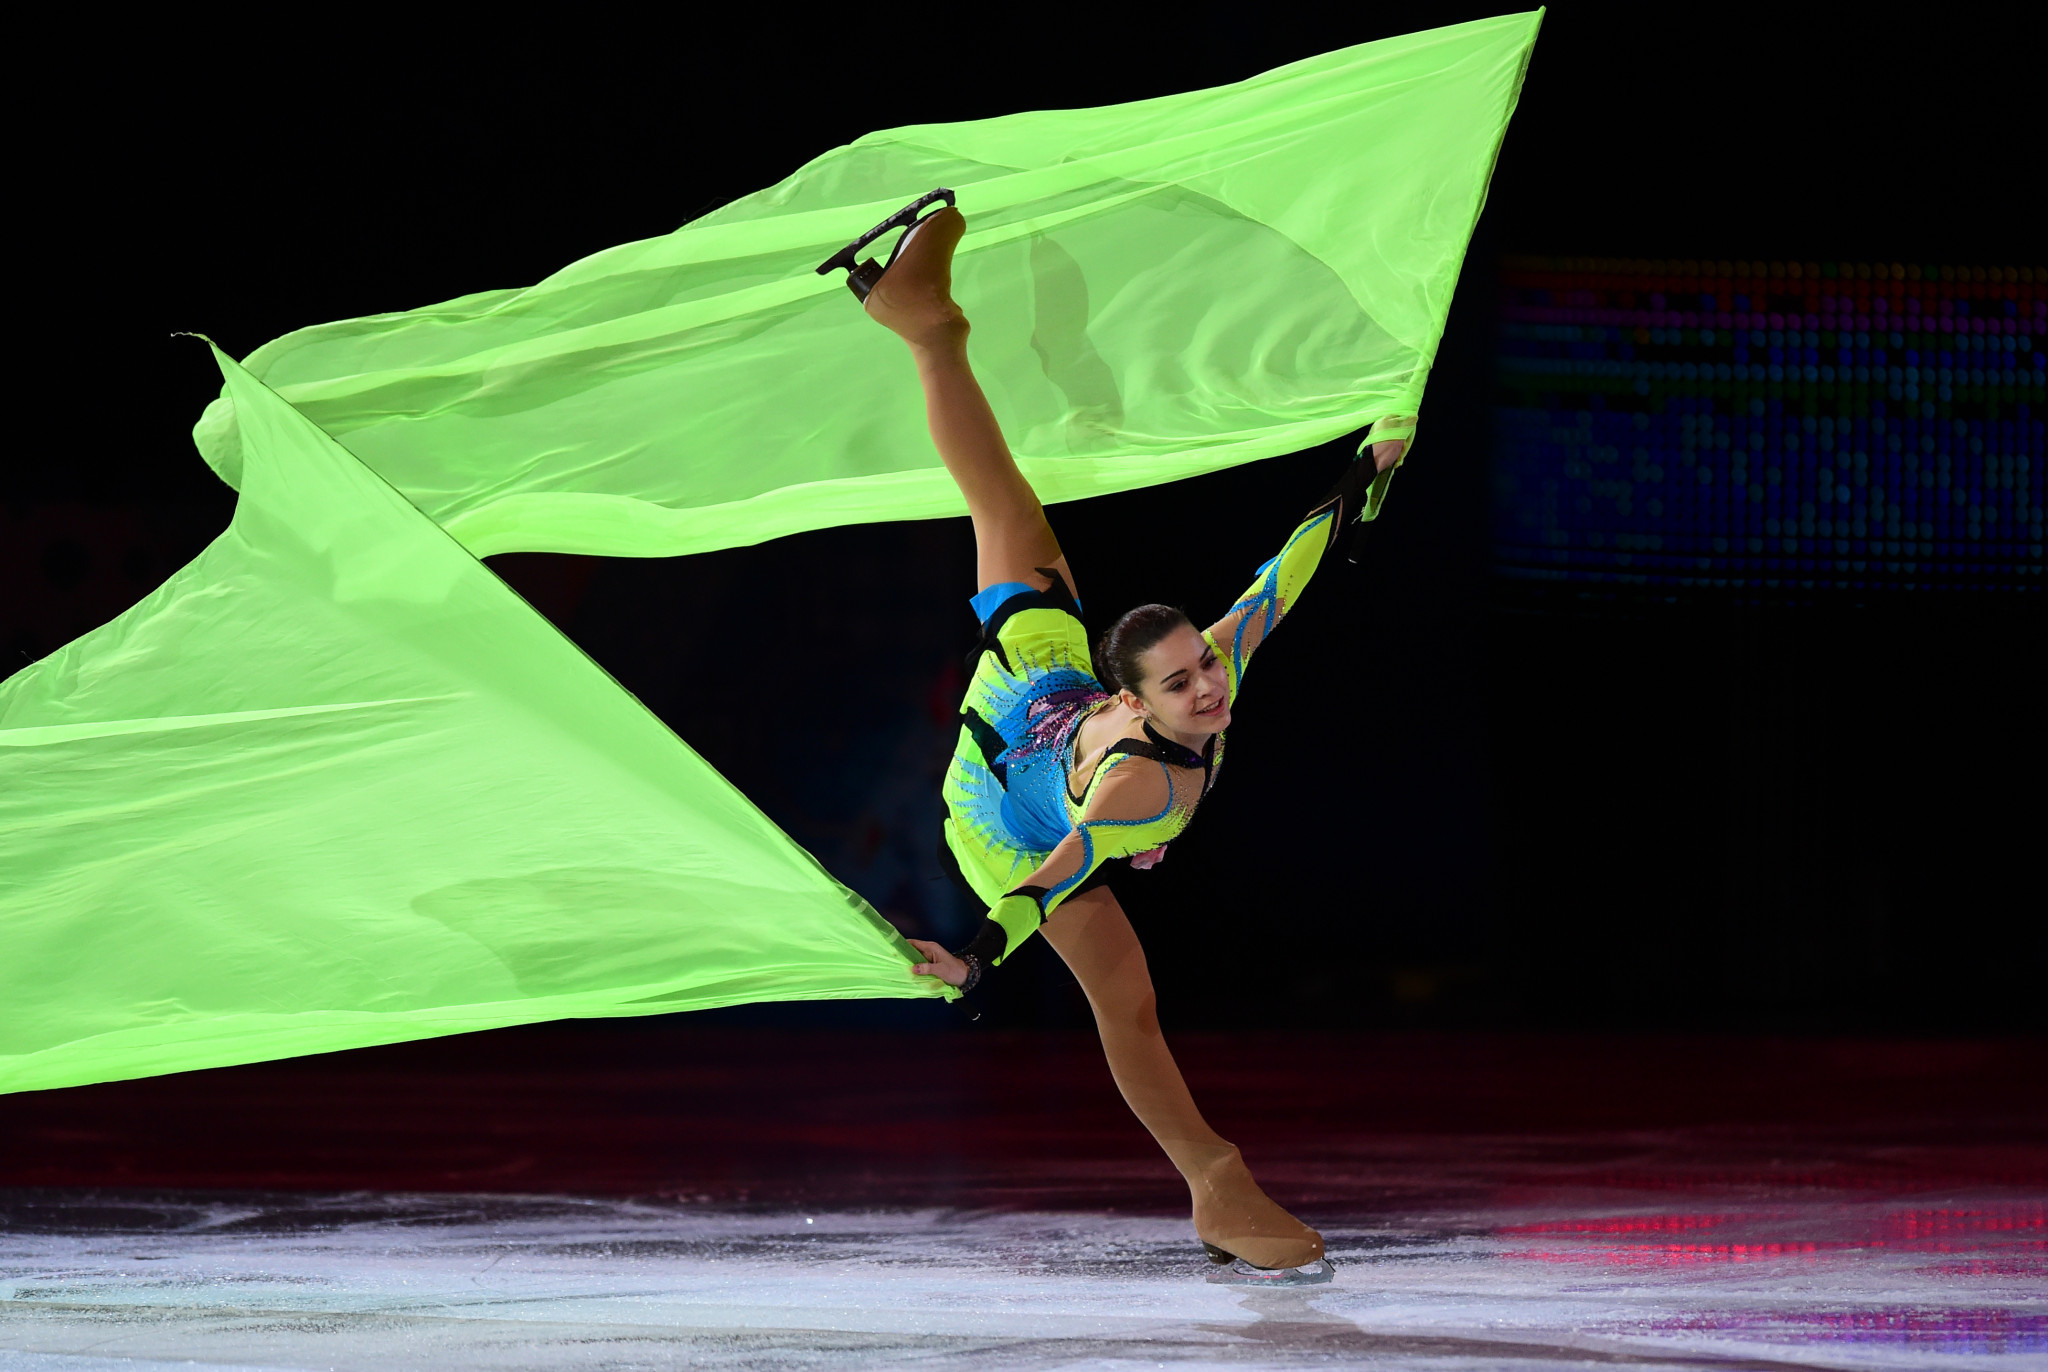 Sochi 2014 champion Sotnikova to miss new figure skating season